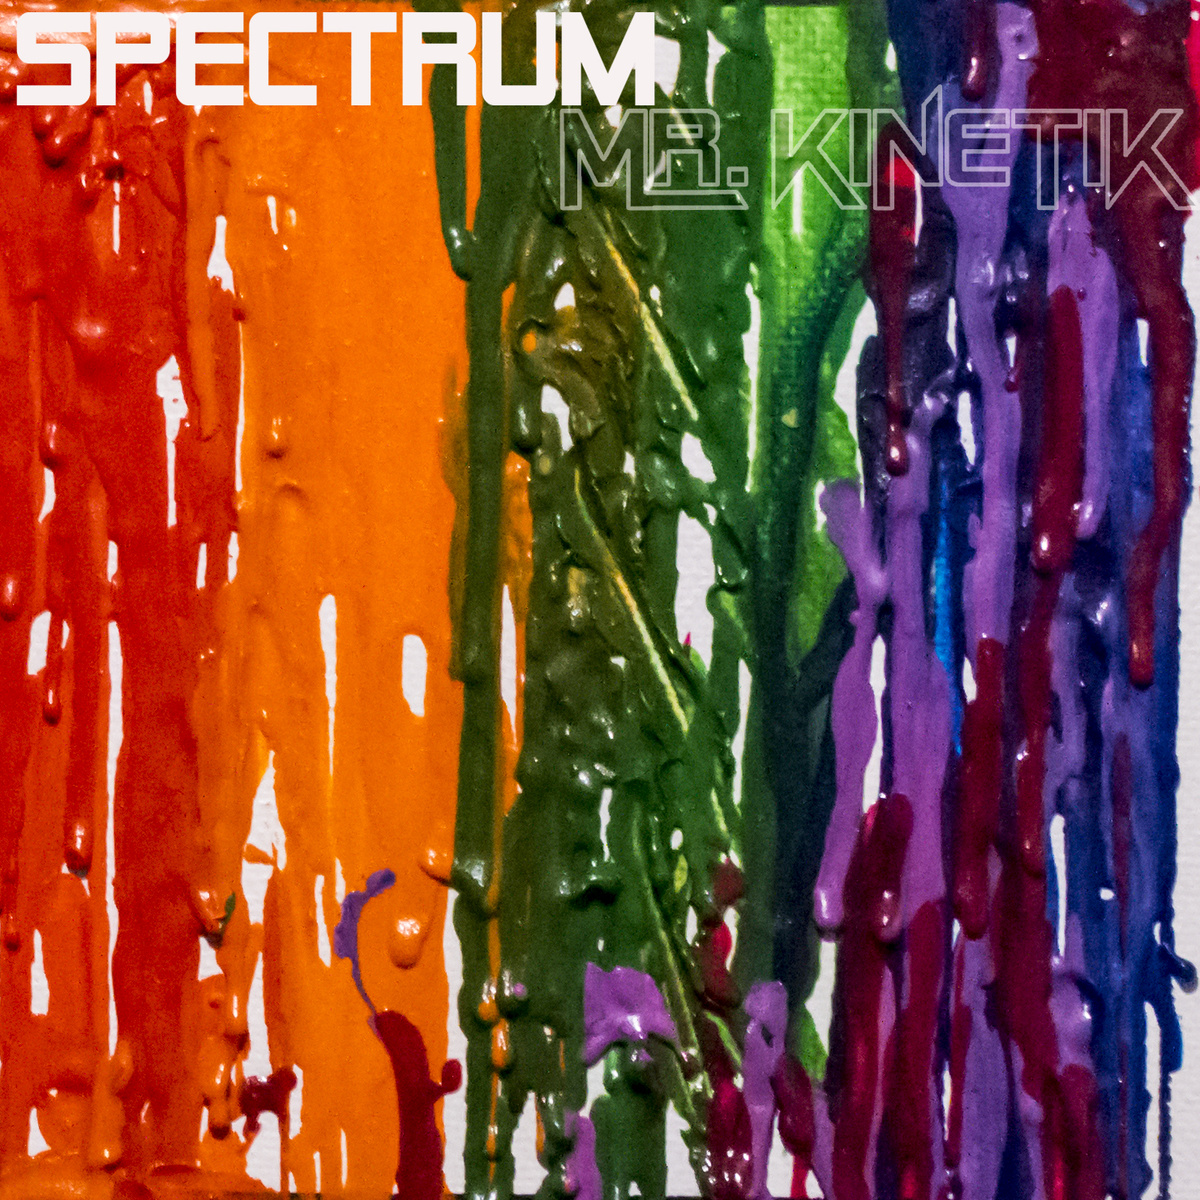 Mr. Kinetik - "Spectrum" (Release)